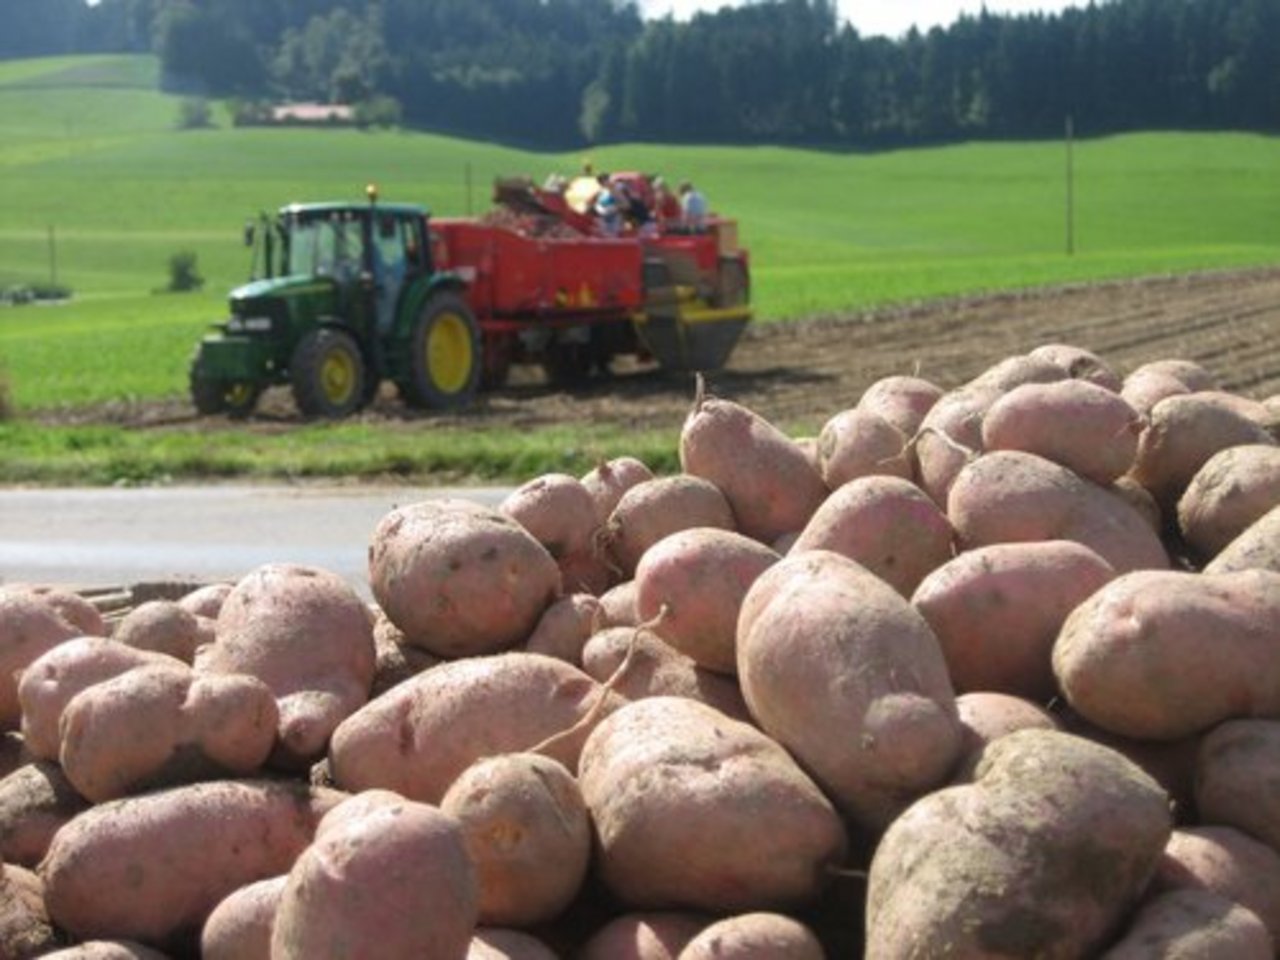 Die Migros macht sich bei den Kartoffelnpflanzern unbeliebt, indem sie holländische Raclette-Kartoffeln importiert, obwohl Schweizer Ware vorhanden wäre. (Bild lid)